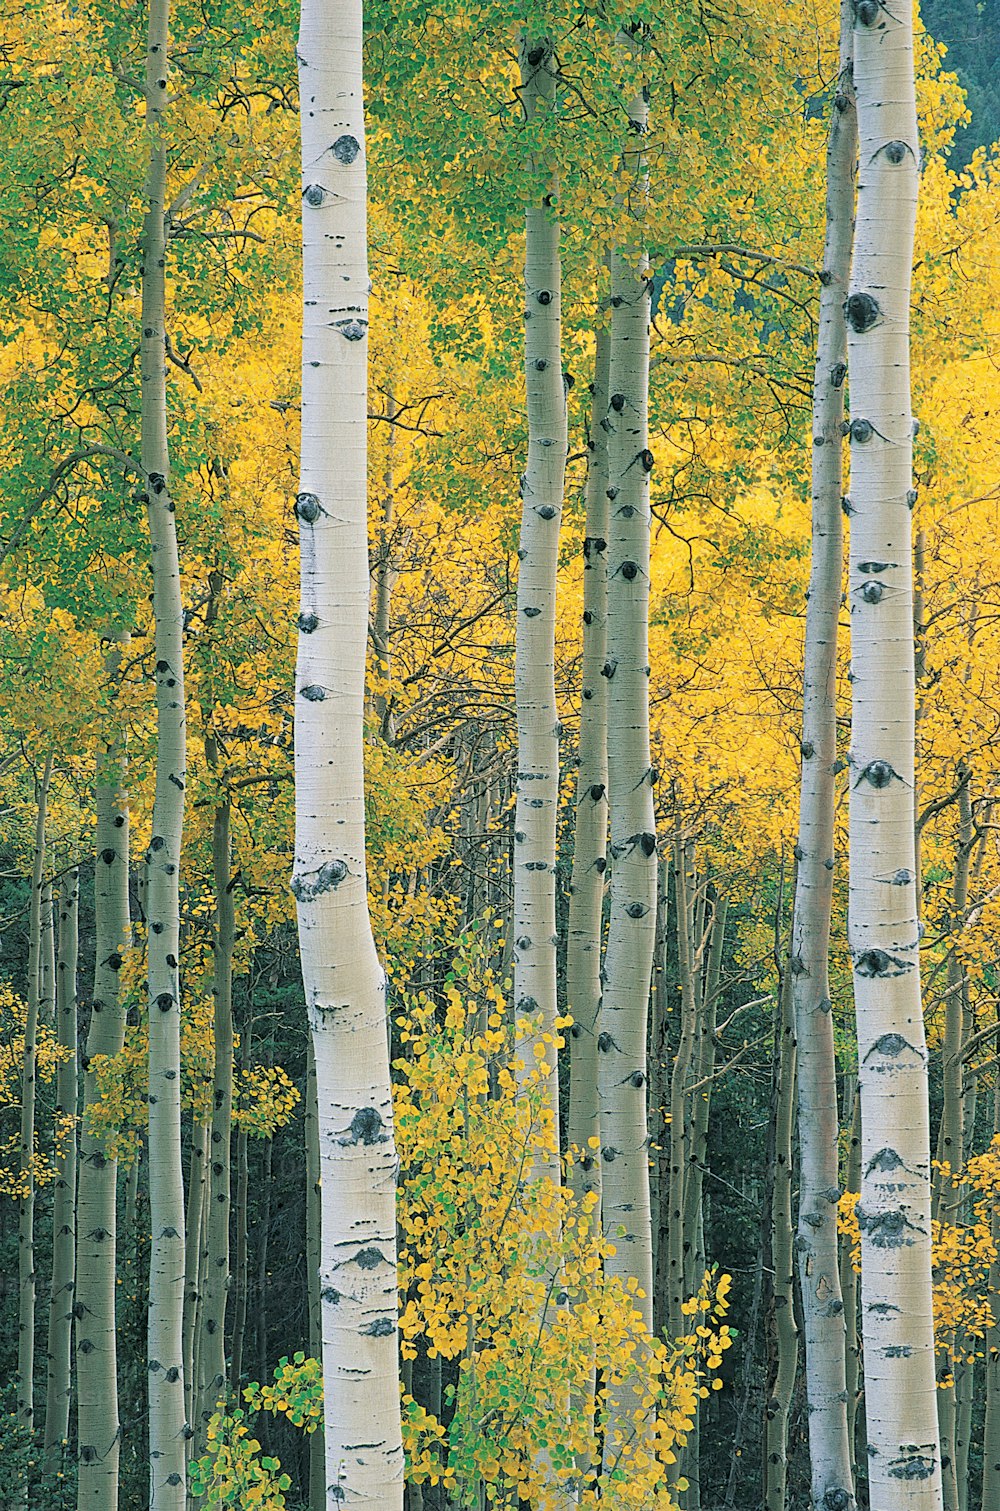 Eine Gruppe von Bäumen mit gelben Blättern in einem Wald